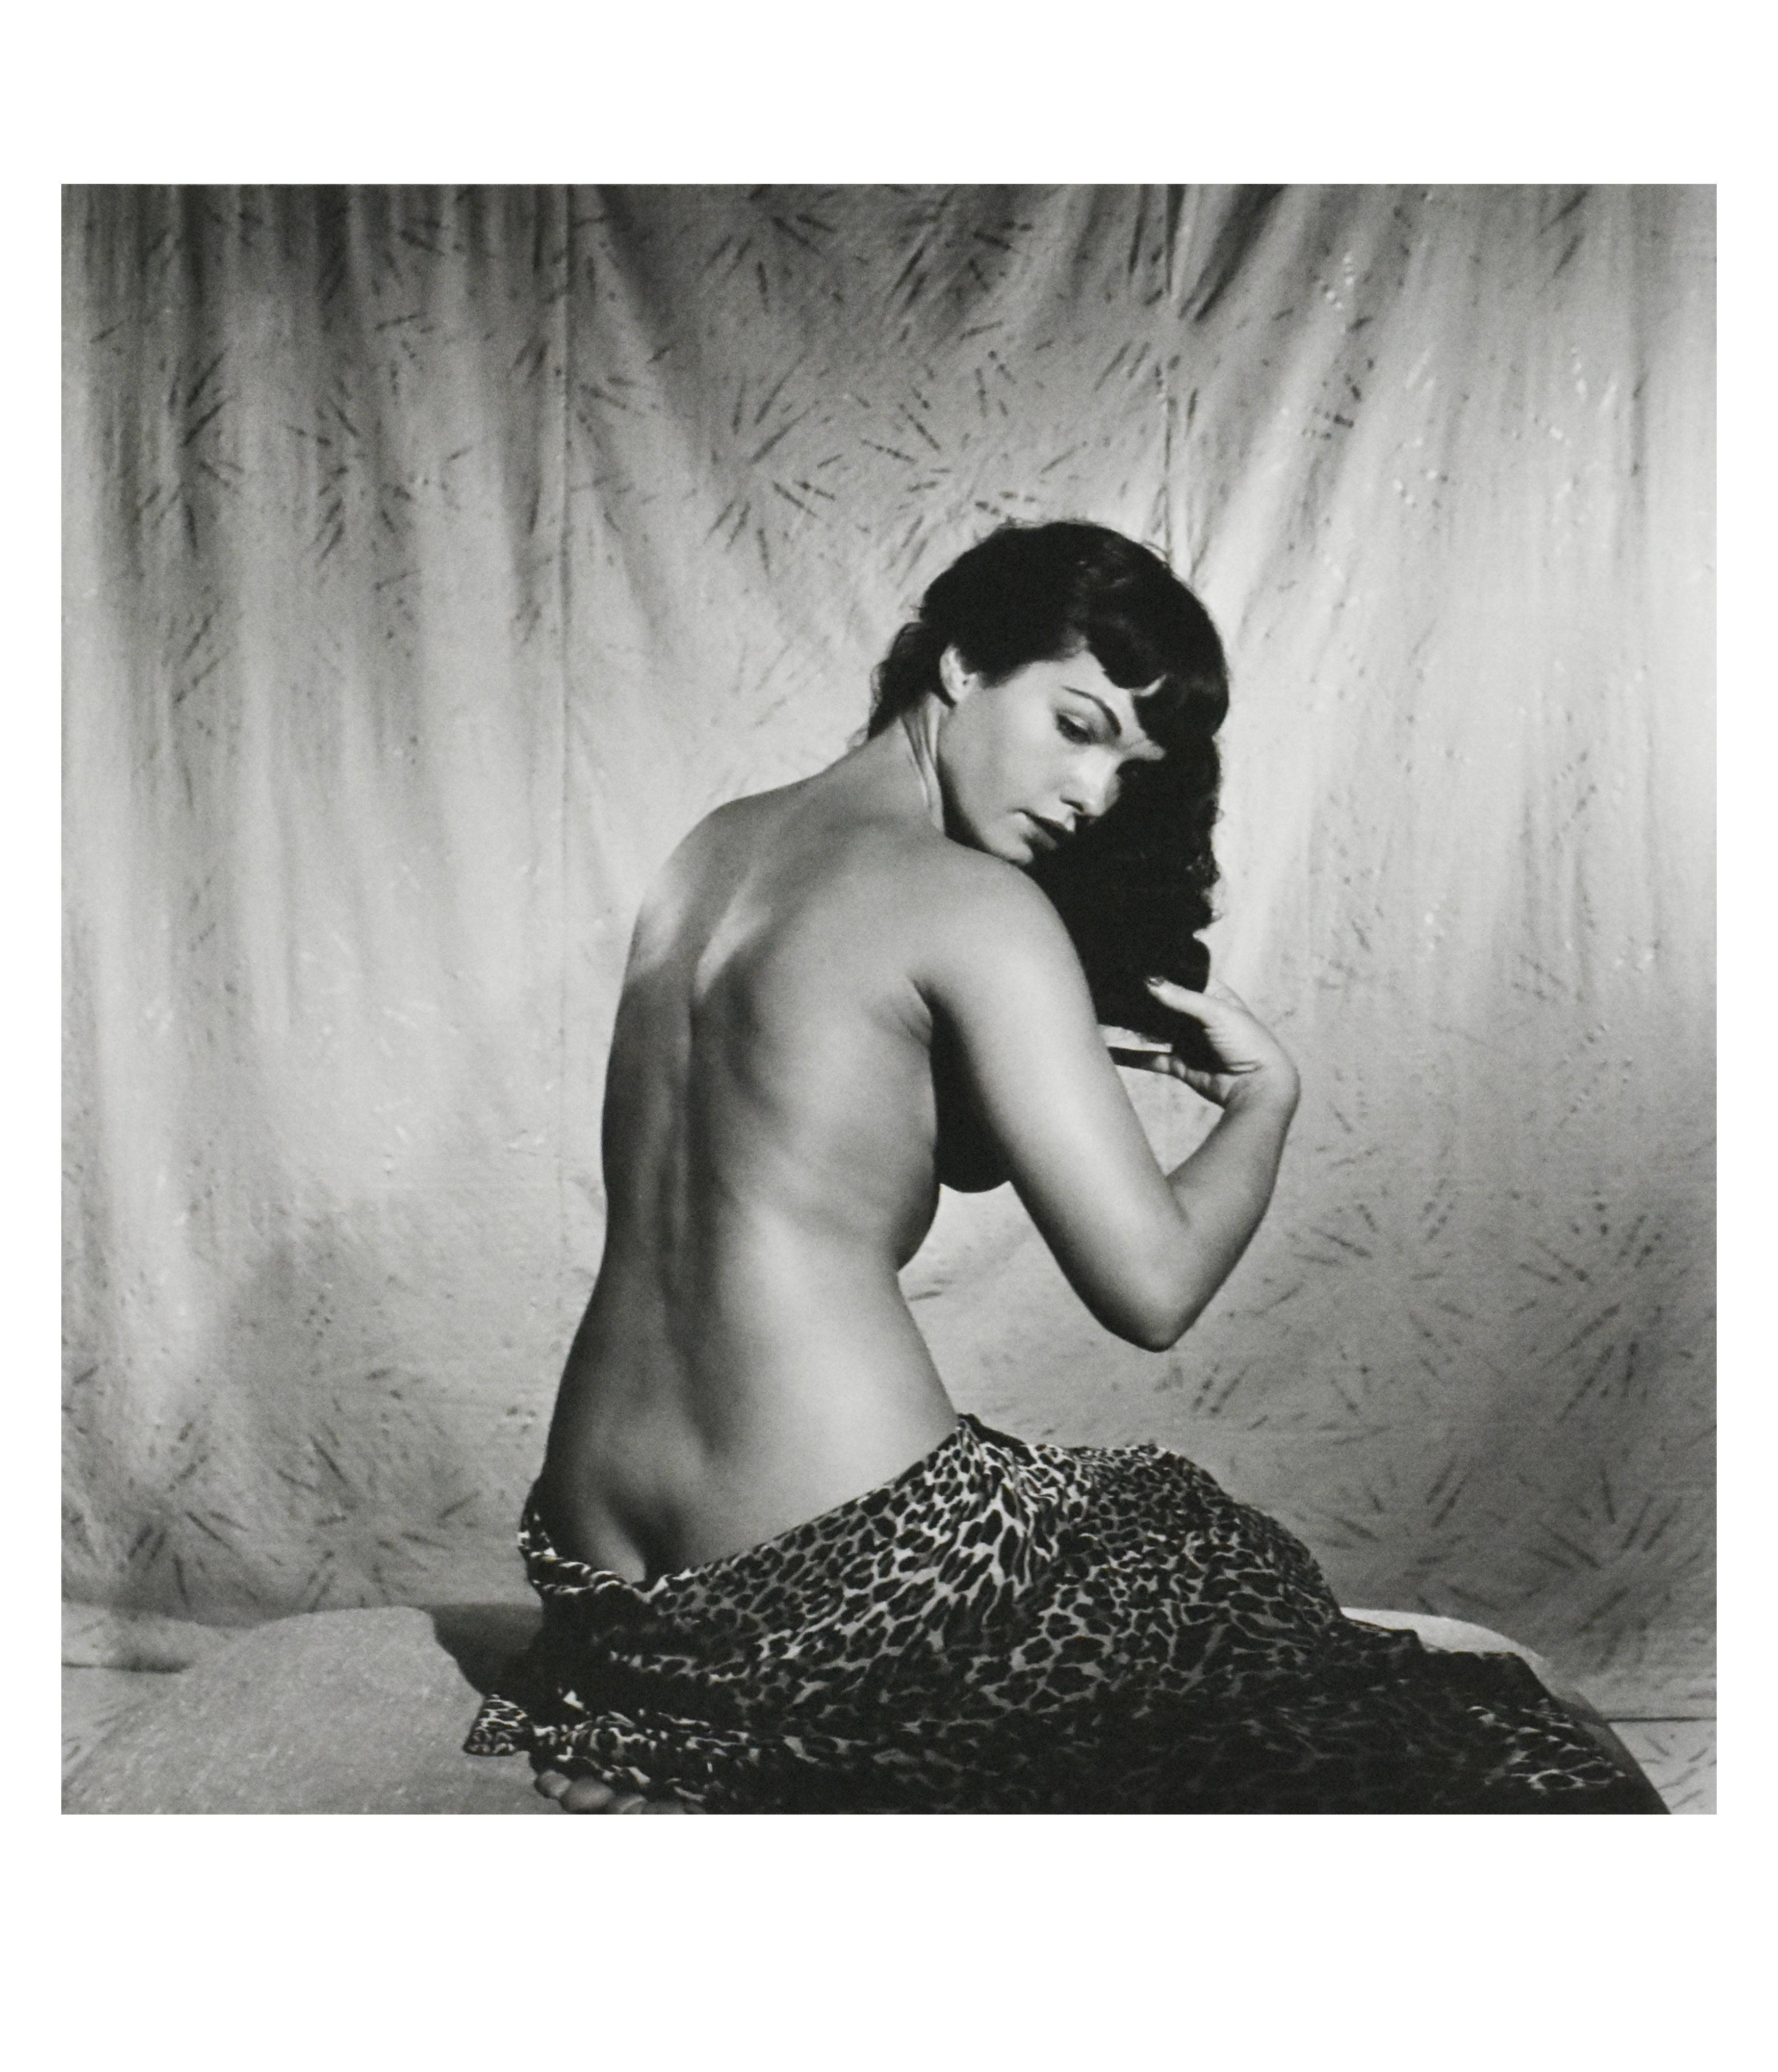 Bettie Page „Bürschendes Haar“, erste Aufnahme 1954 (Grau), Black and White Photograph, von Bunny Yeager